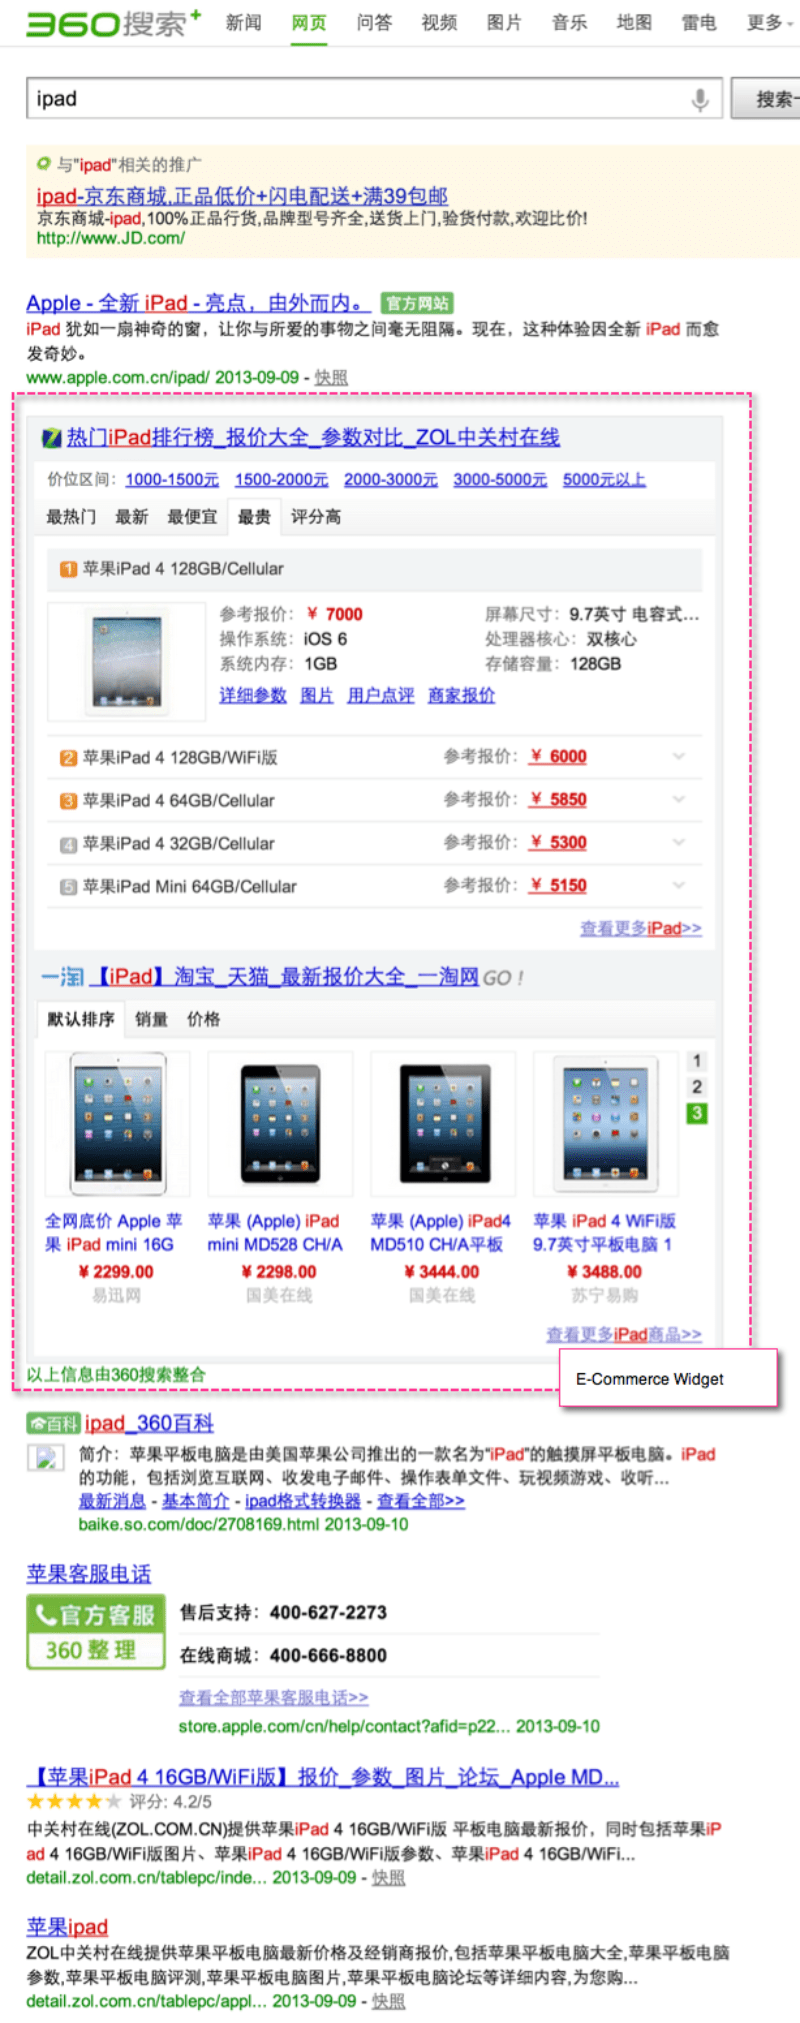 Qihoo 360 E-Commerce Widget